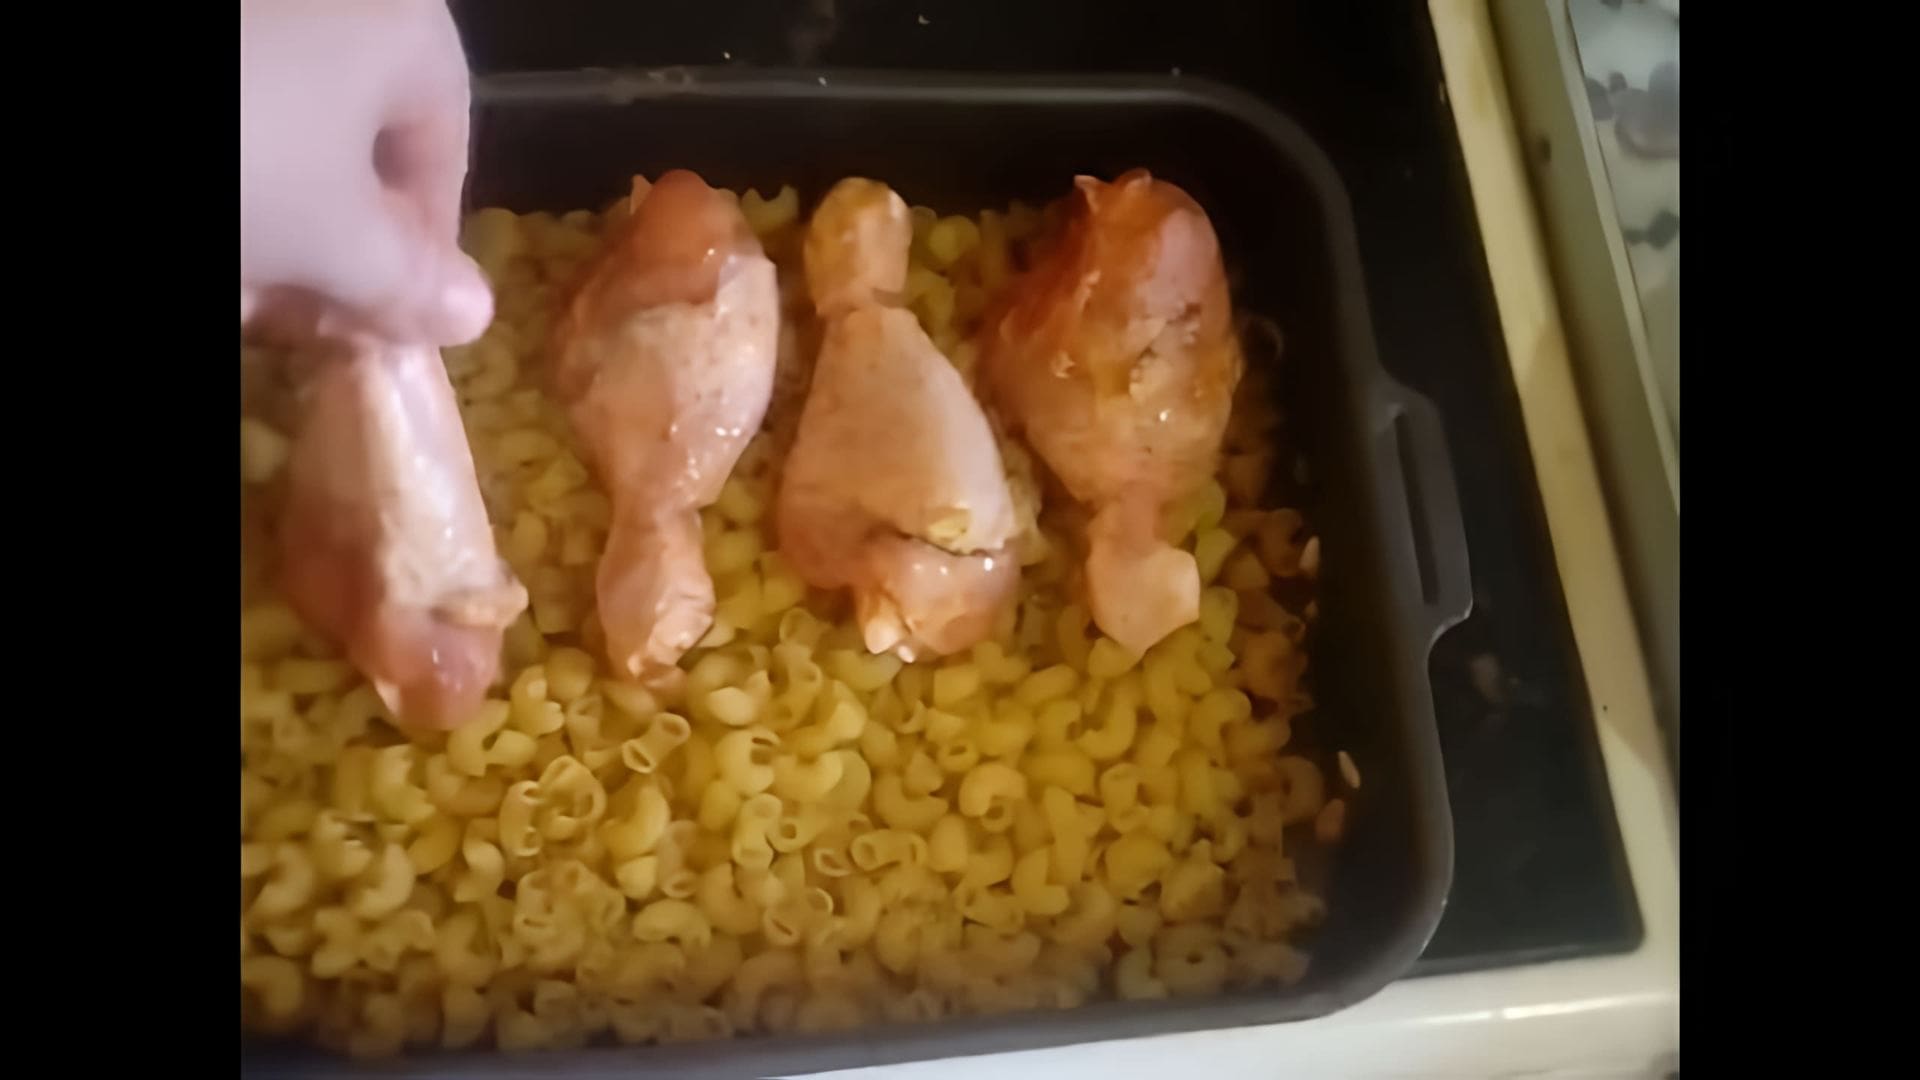 #shorts Курица с макаронами в духовке - это видео-ролик, который демонстрирует процесс приготовления вкусного и простого блюда - курицы с макаронами в духовке